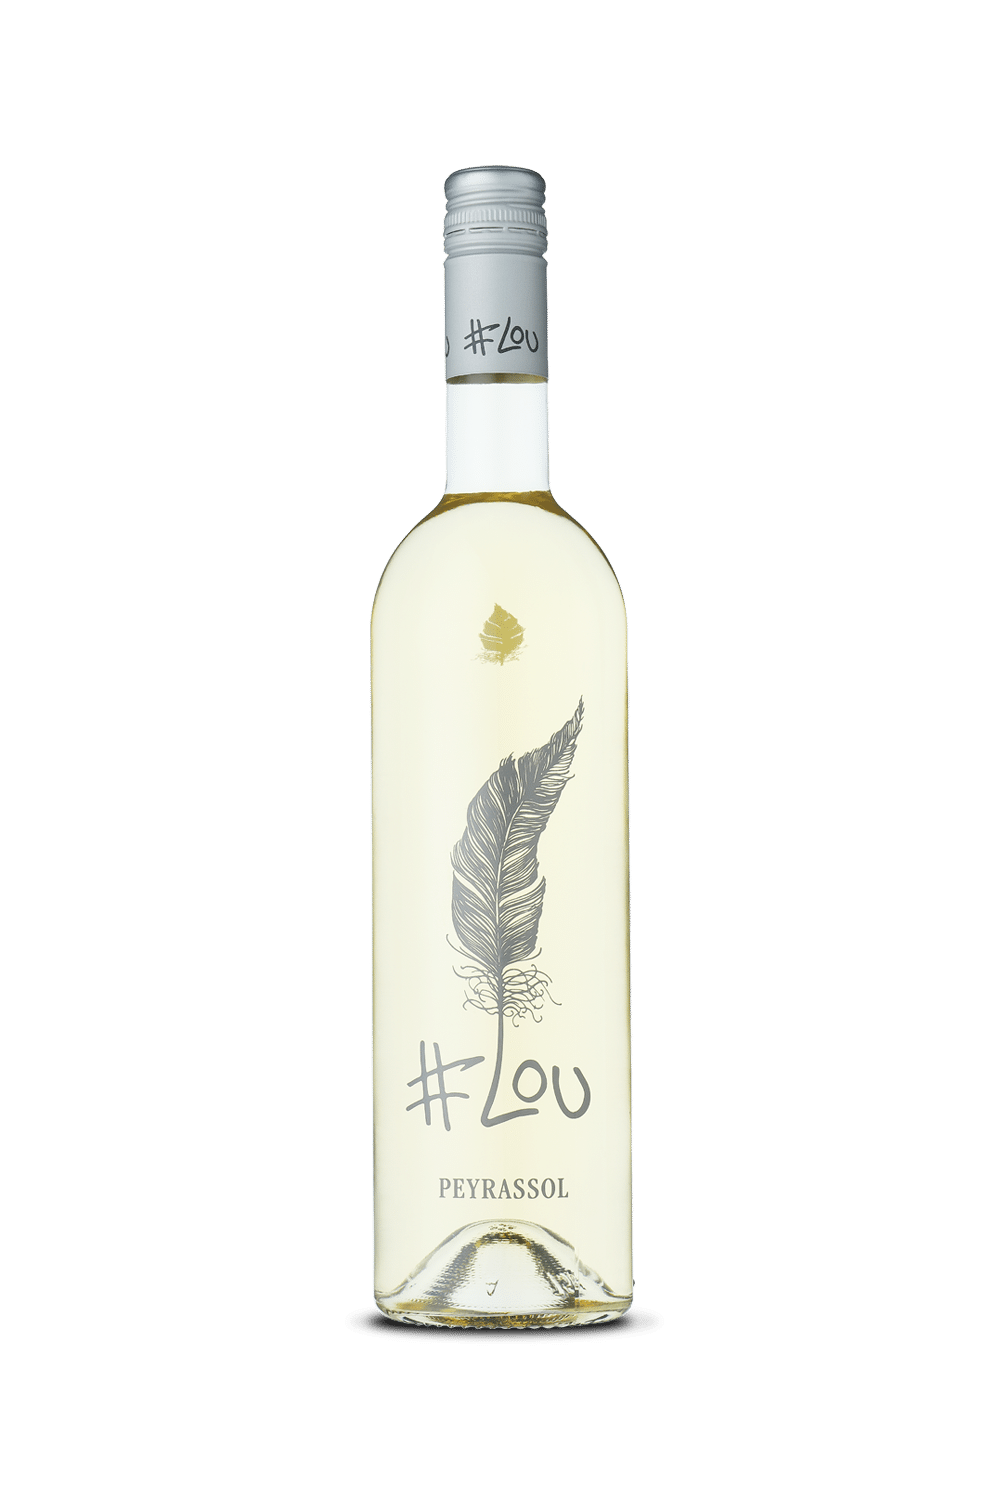 #Lou Blanc Peyrassol, vin blanc de marque du domaine de la Commanderie de Peyrassol (vin de provence)